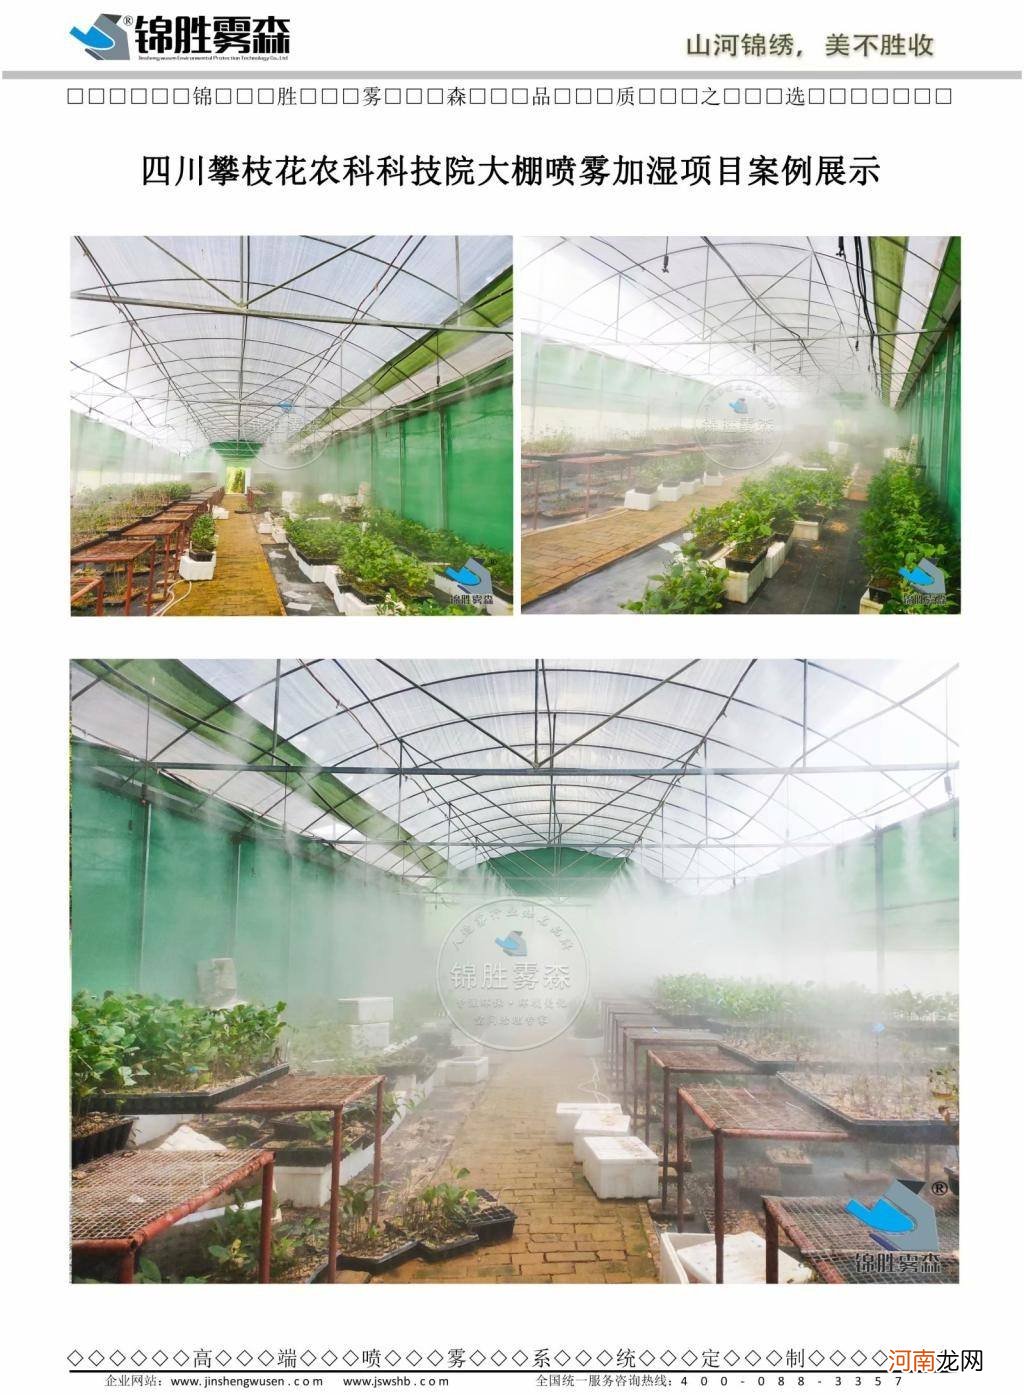 青岛巩义喷雾加湿系统厂家 青岛巩义喷雾加湿系统